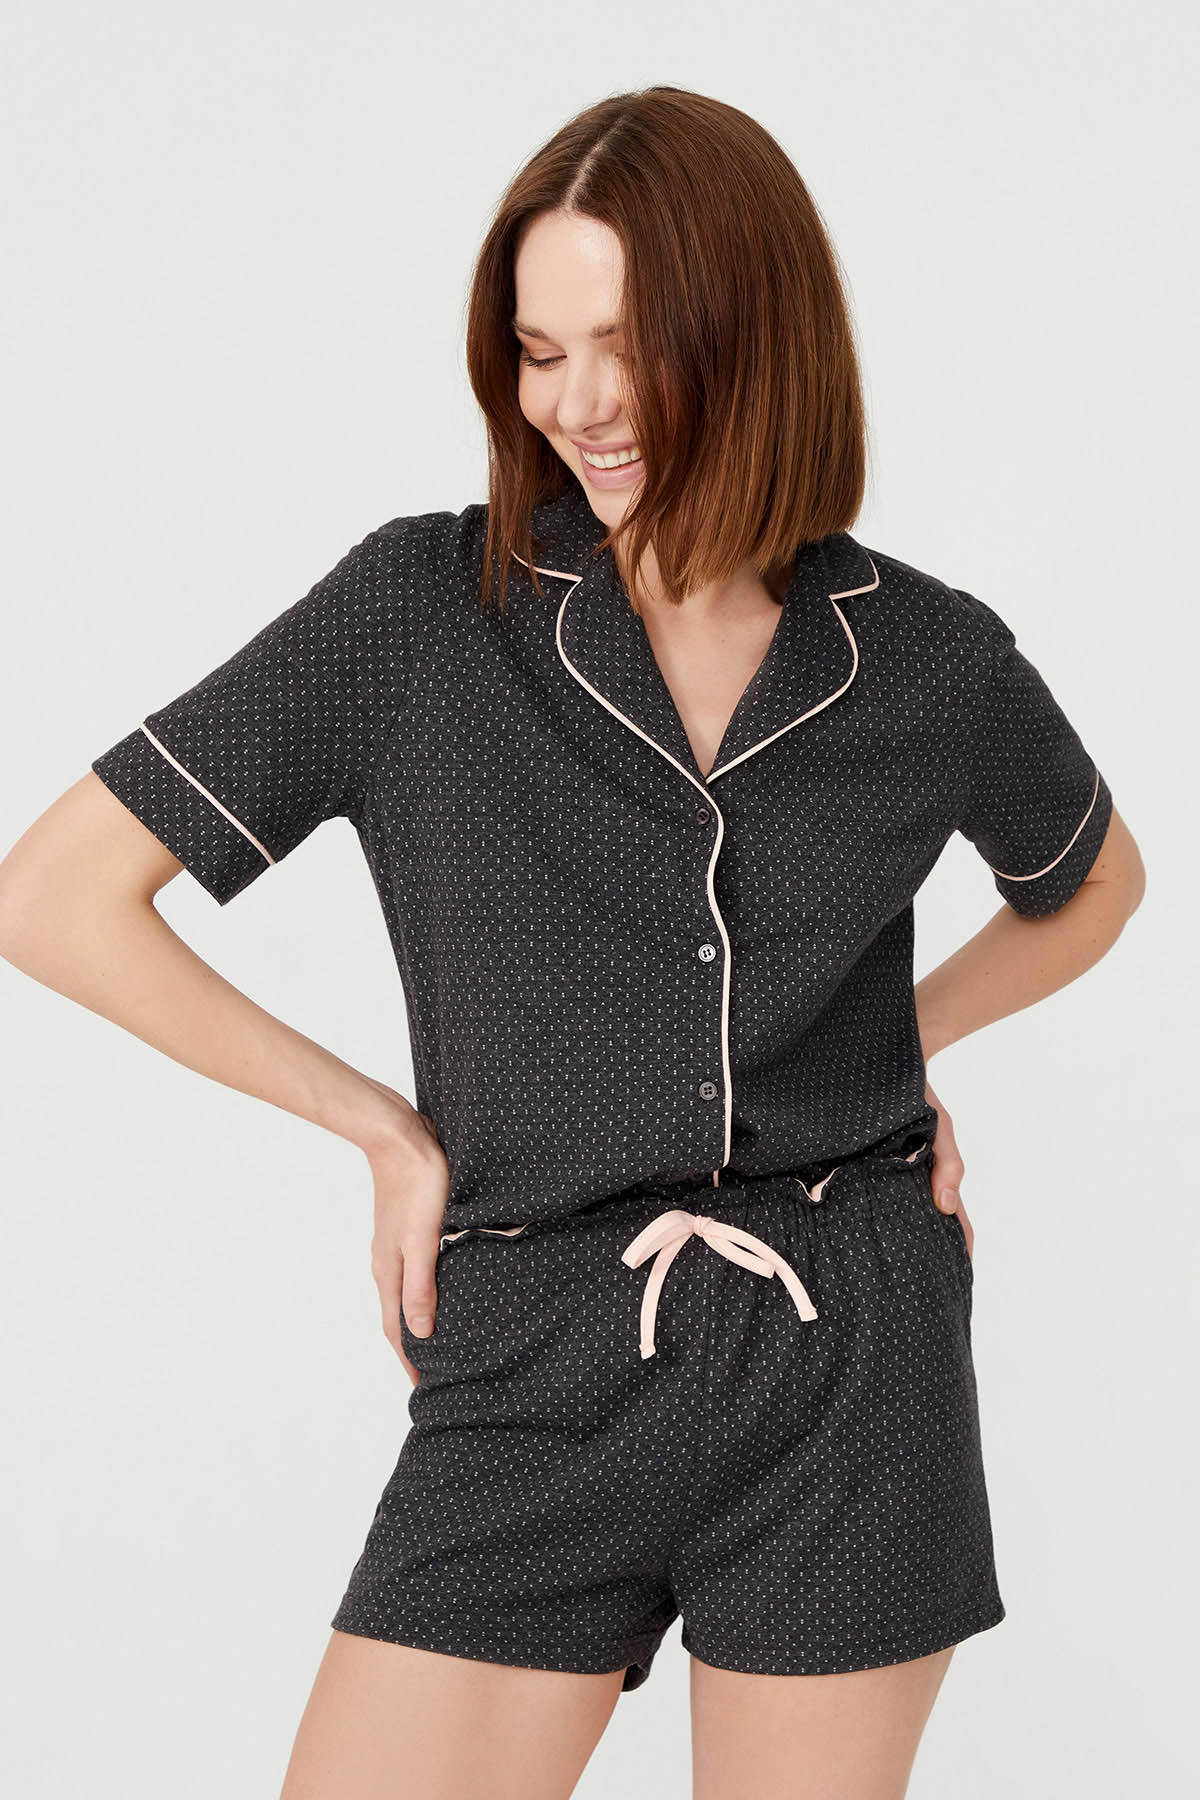 Kadın Pamuklu  Kalp Baskılı Şal Yaka Şortlu Pijama Takımı